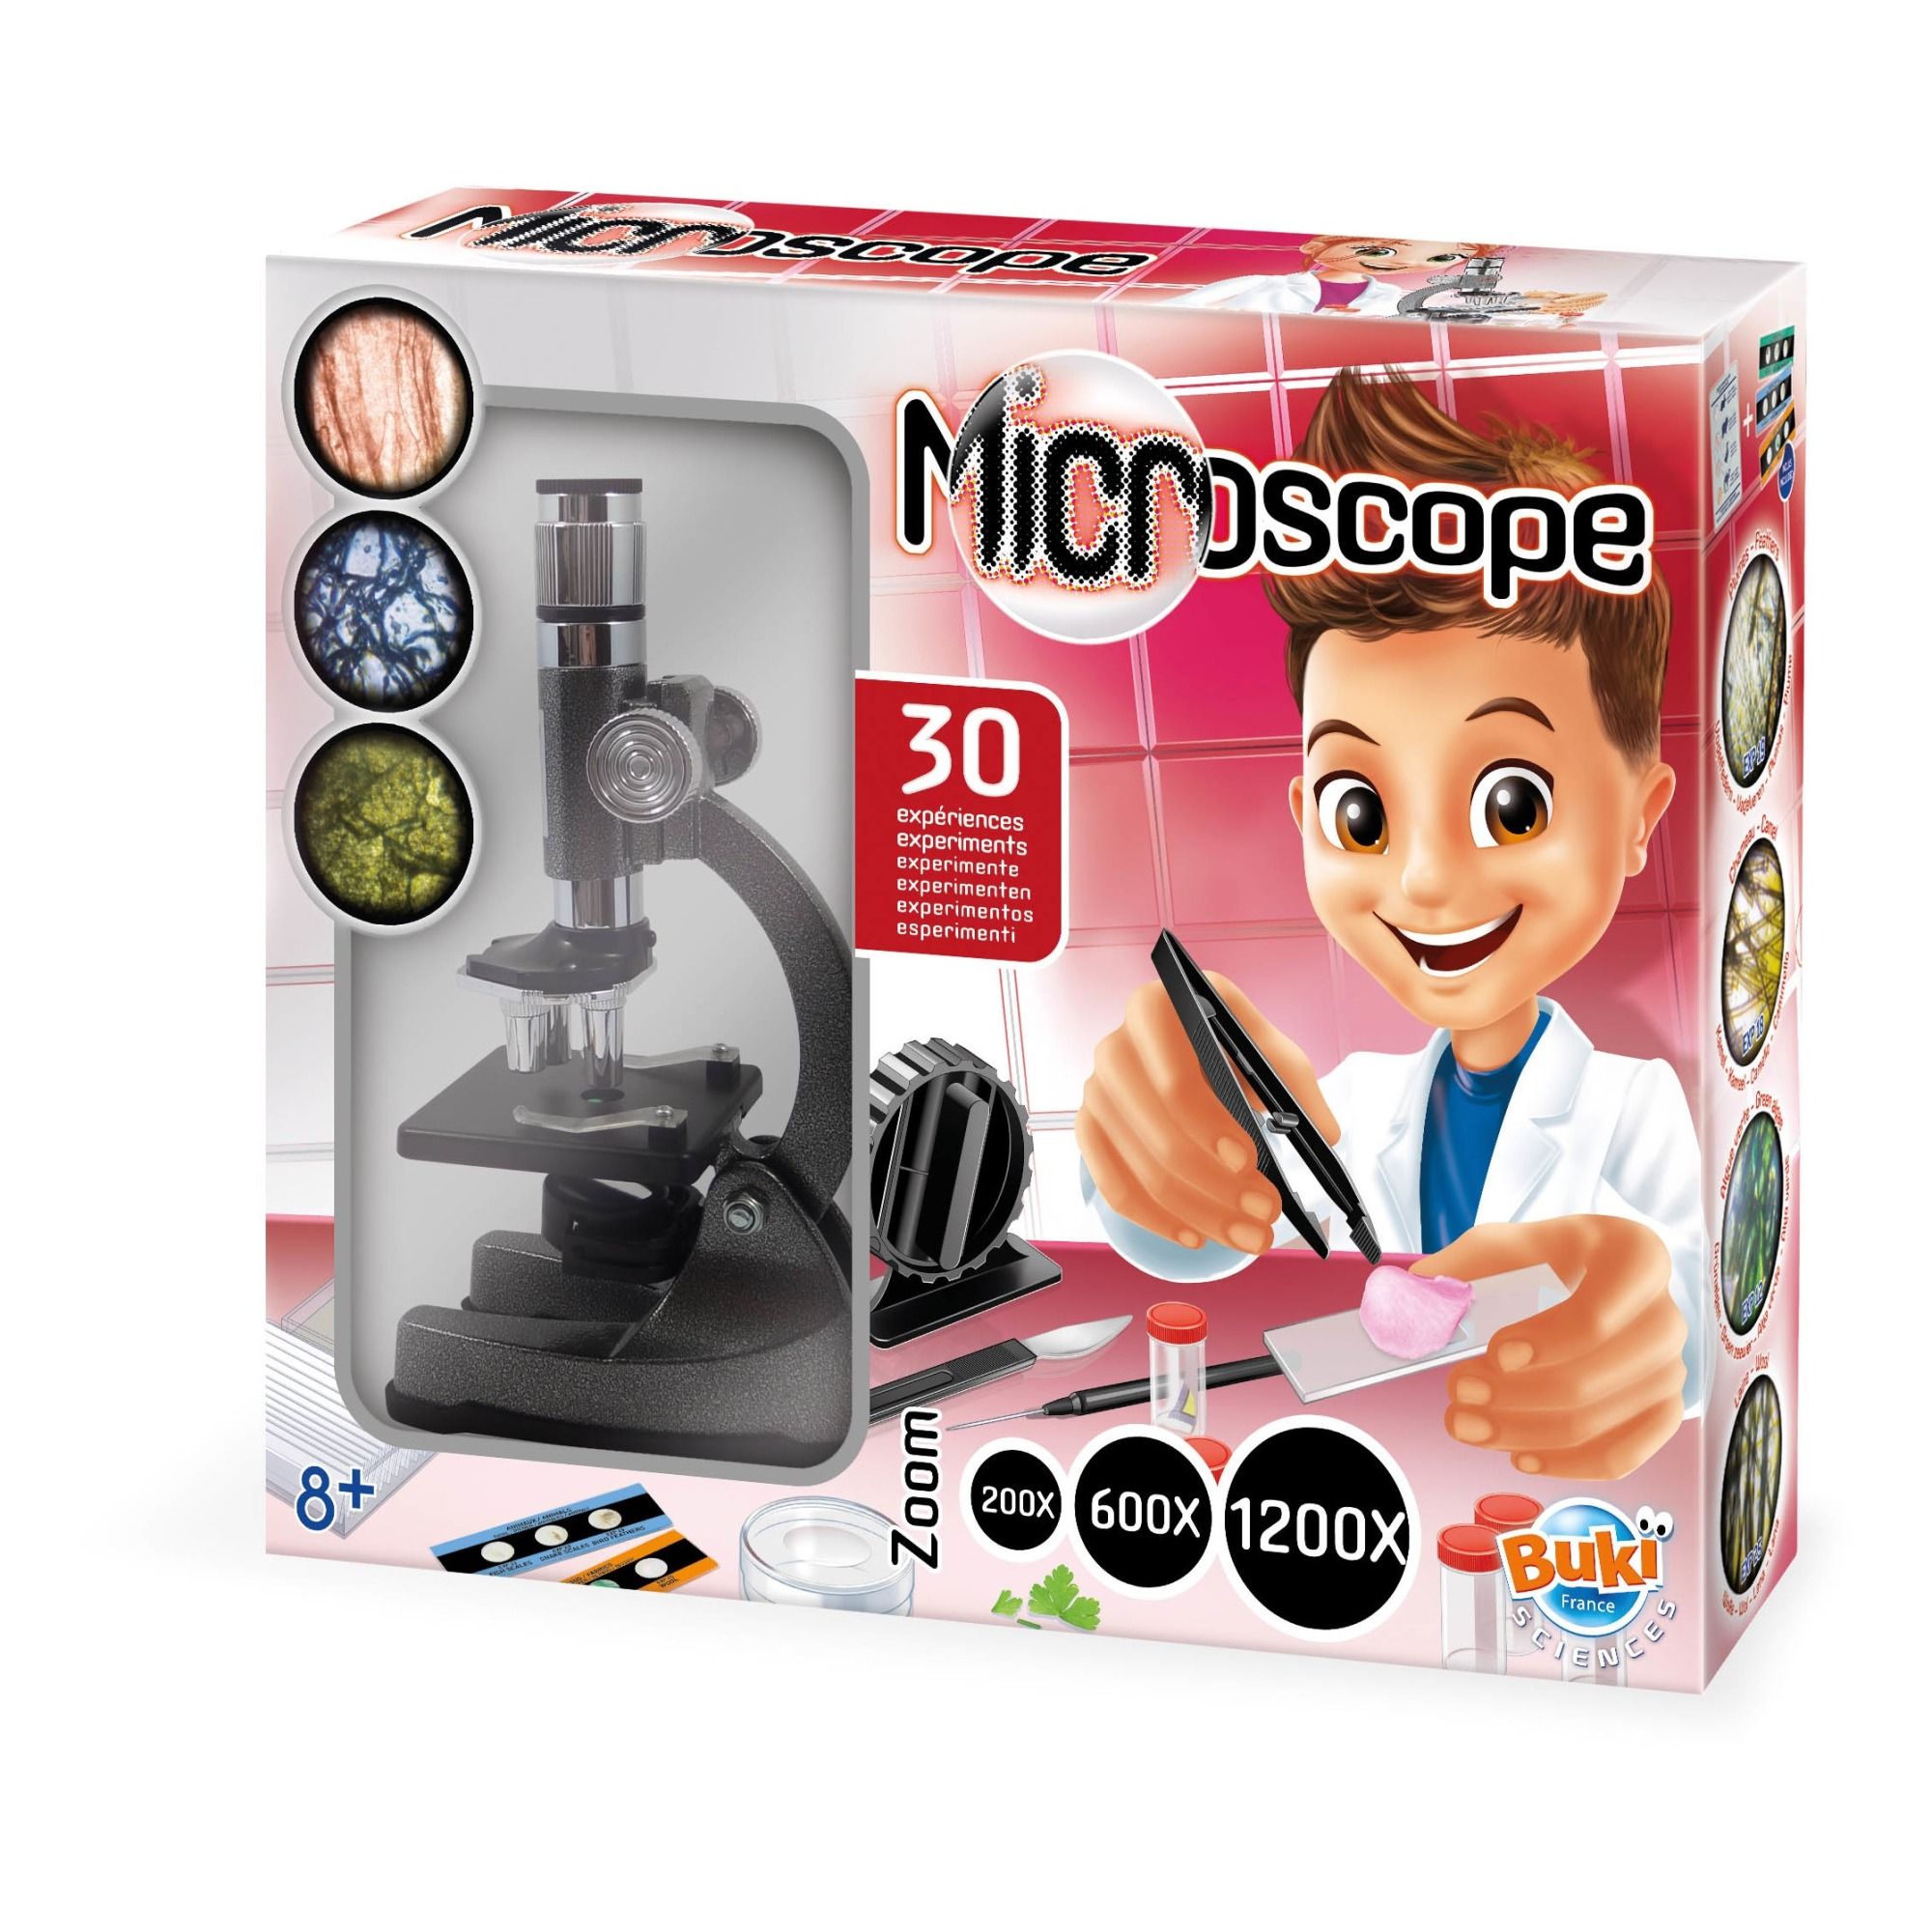 Microscope 50 expériences - BUKI